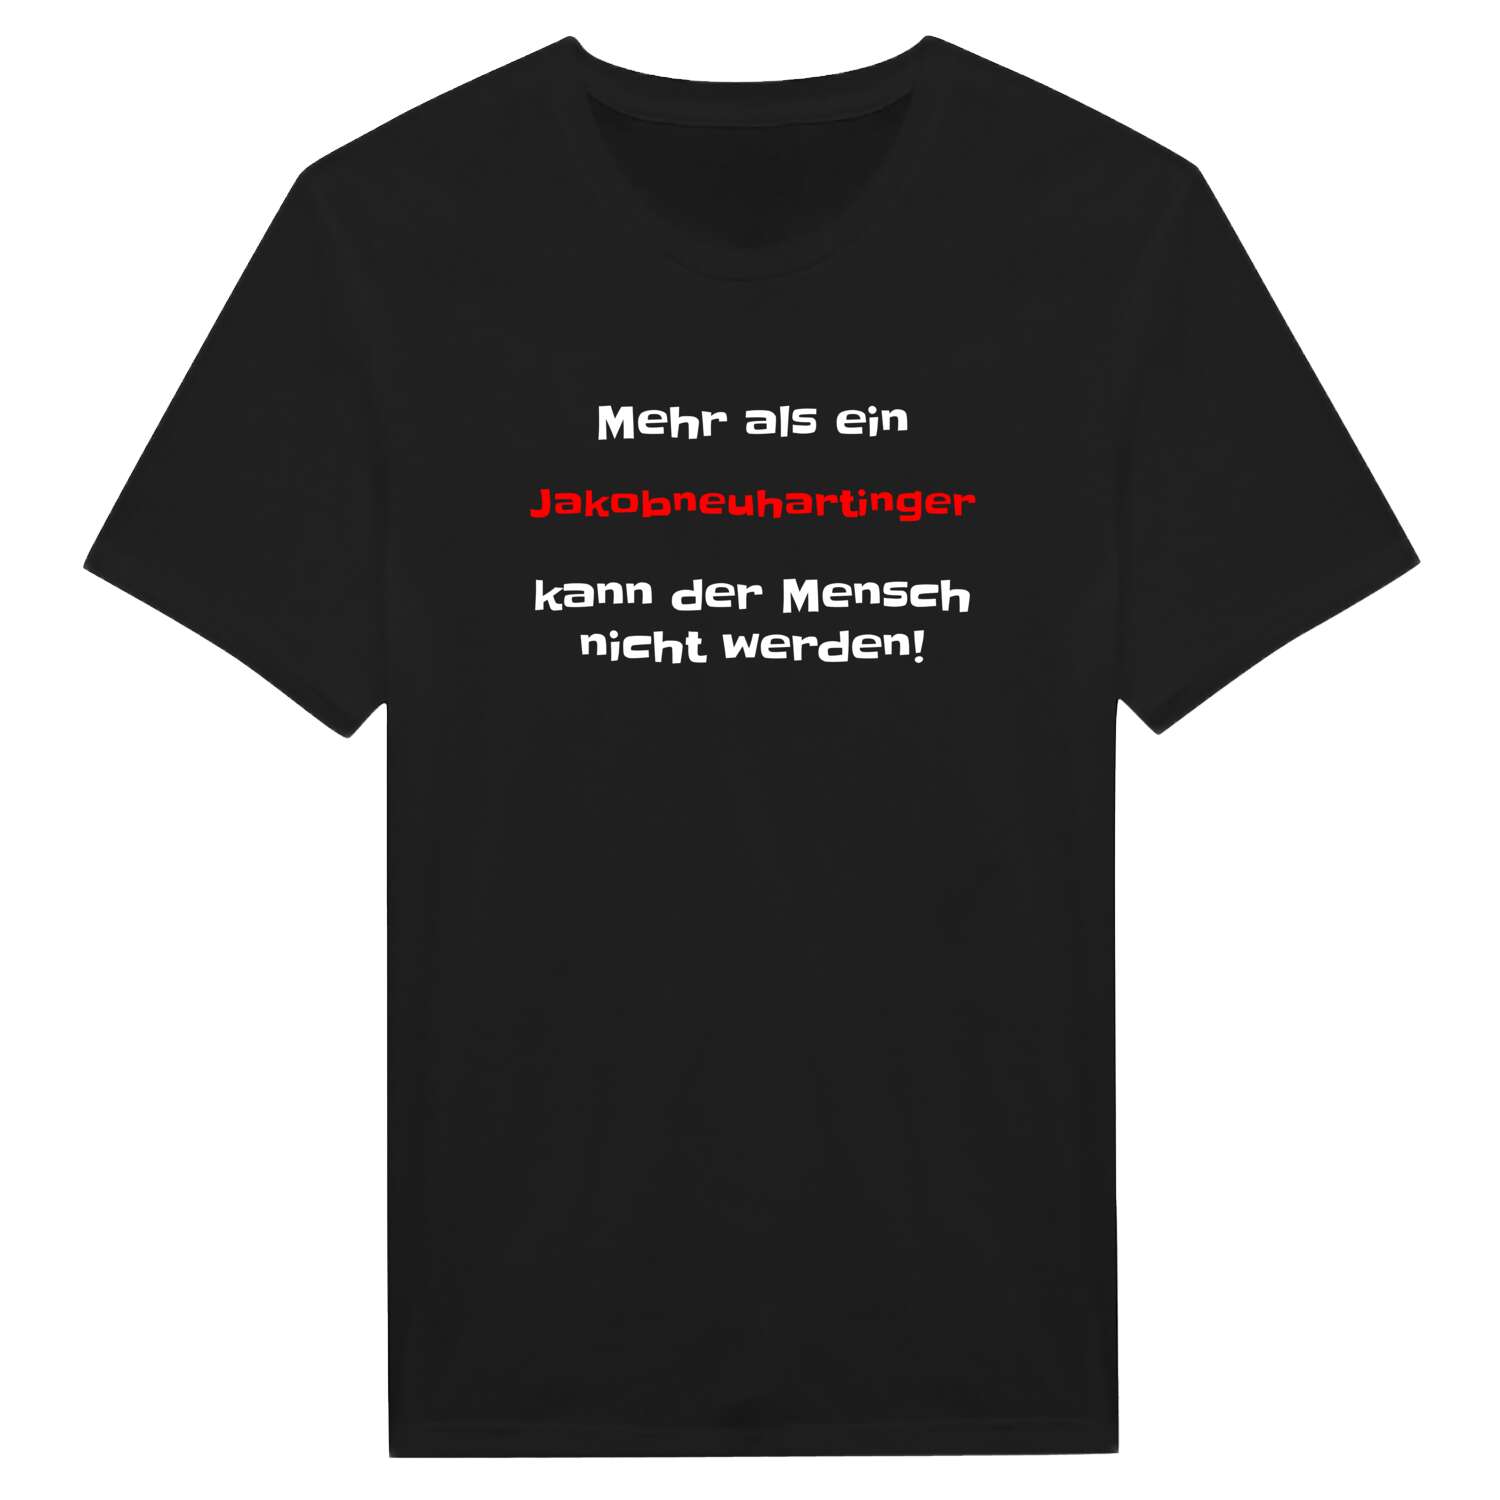 Jakobneuharting T-Shirt »Mehr als ein«